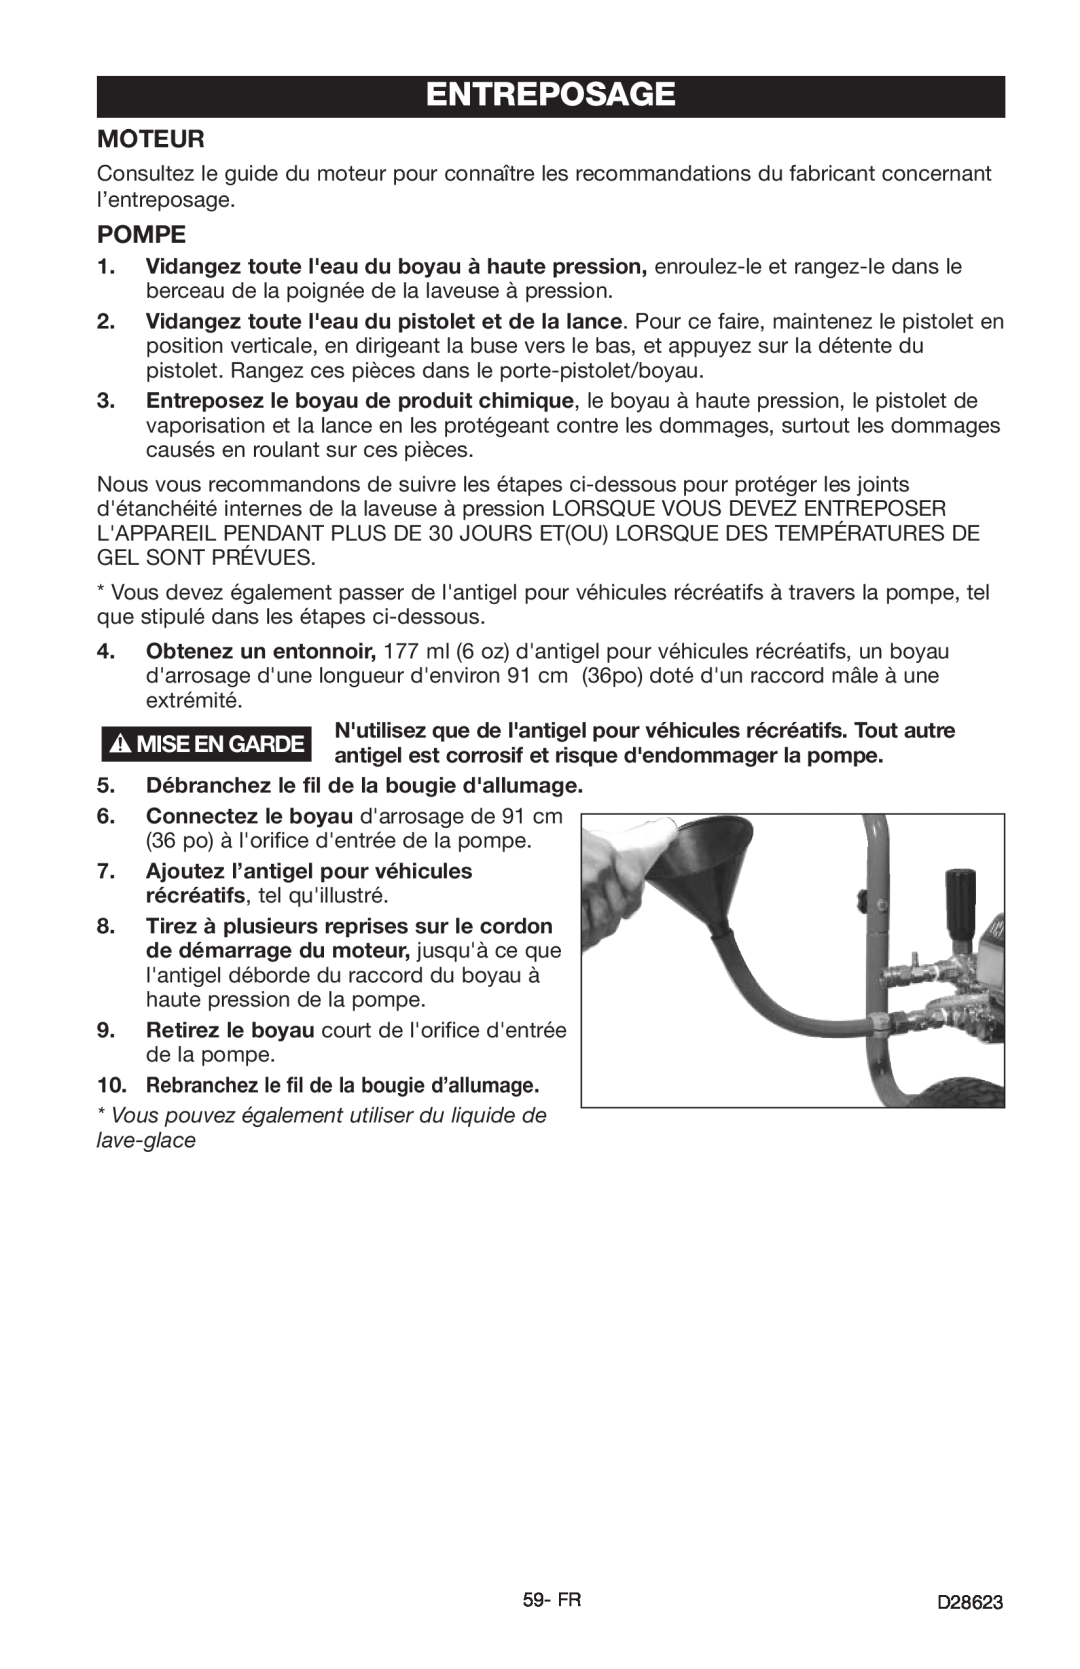 Delta D28623 instruction manual Entreposage, Mise En Garde, antigel est corrosif et risque dendommager la pompe 